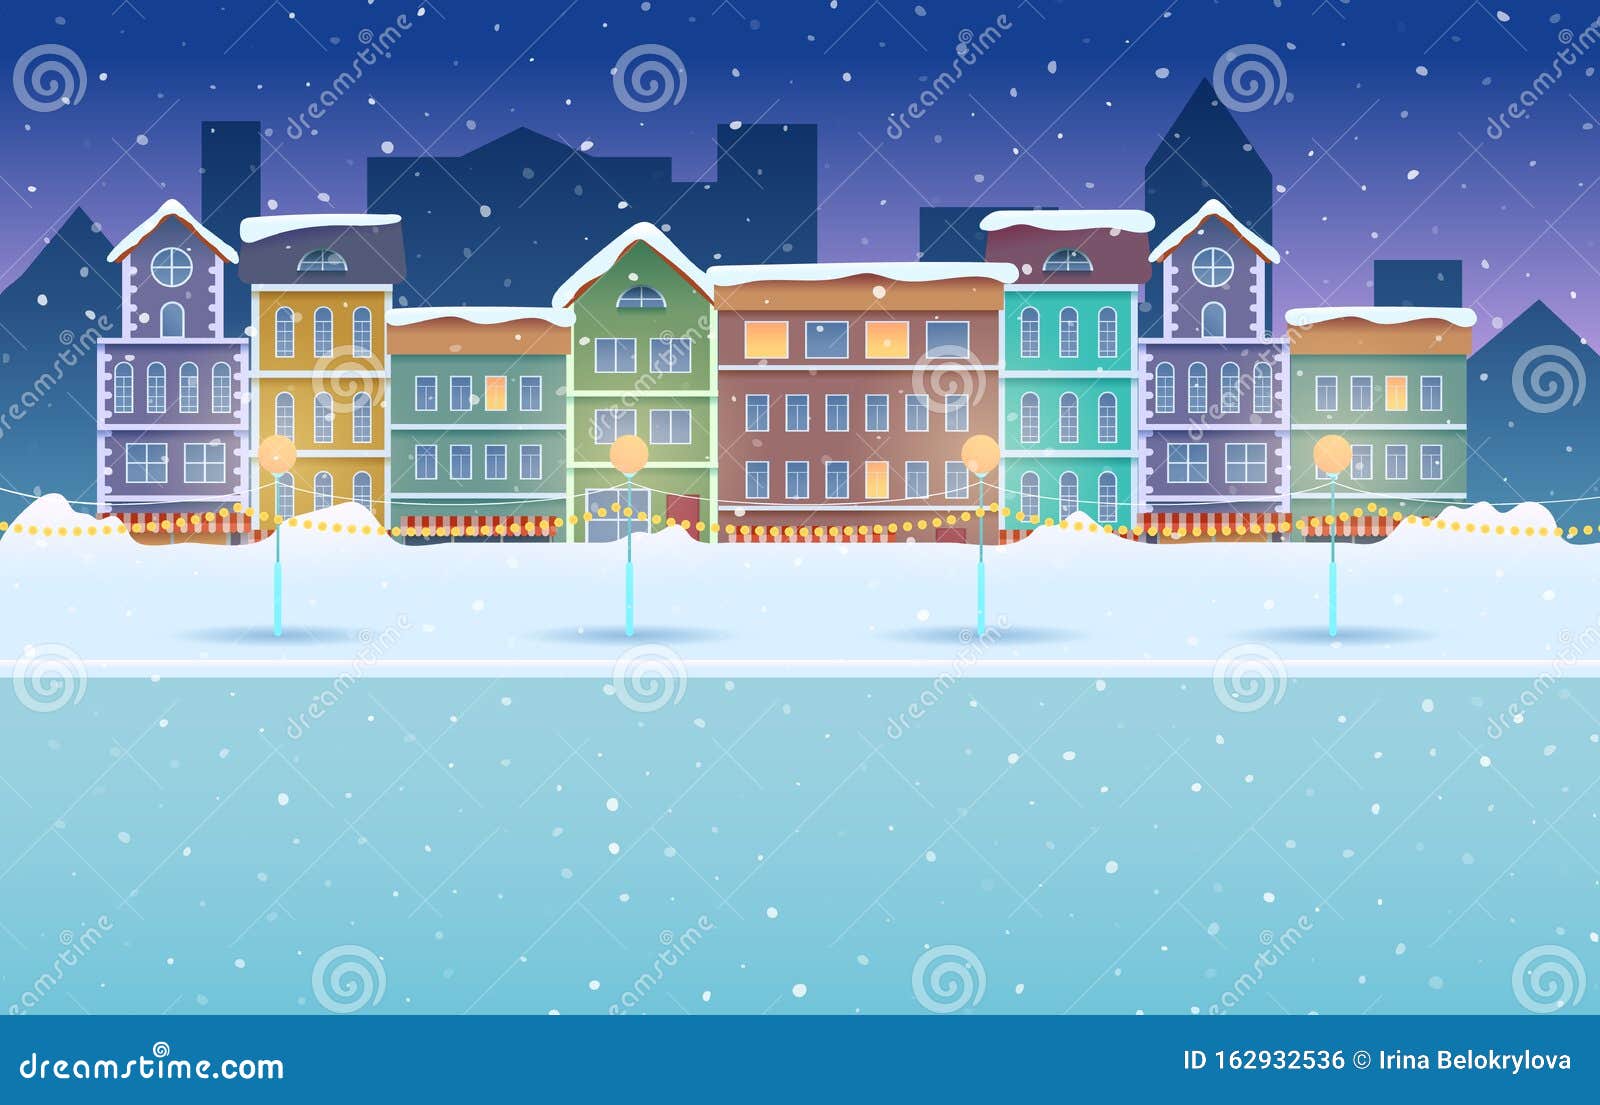 矢量图漫画夜间冬城雪背景向量例证 插画包括有都市风景 家庭 新建 任何地方 现代 例证